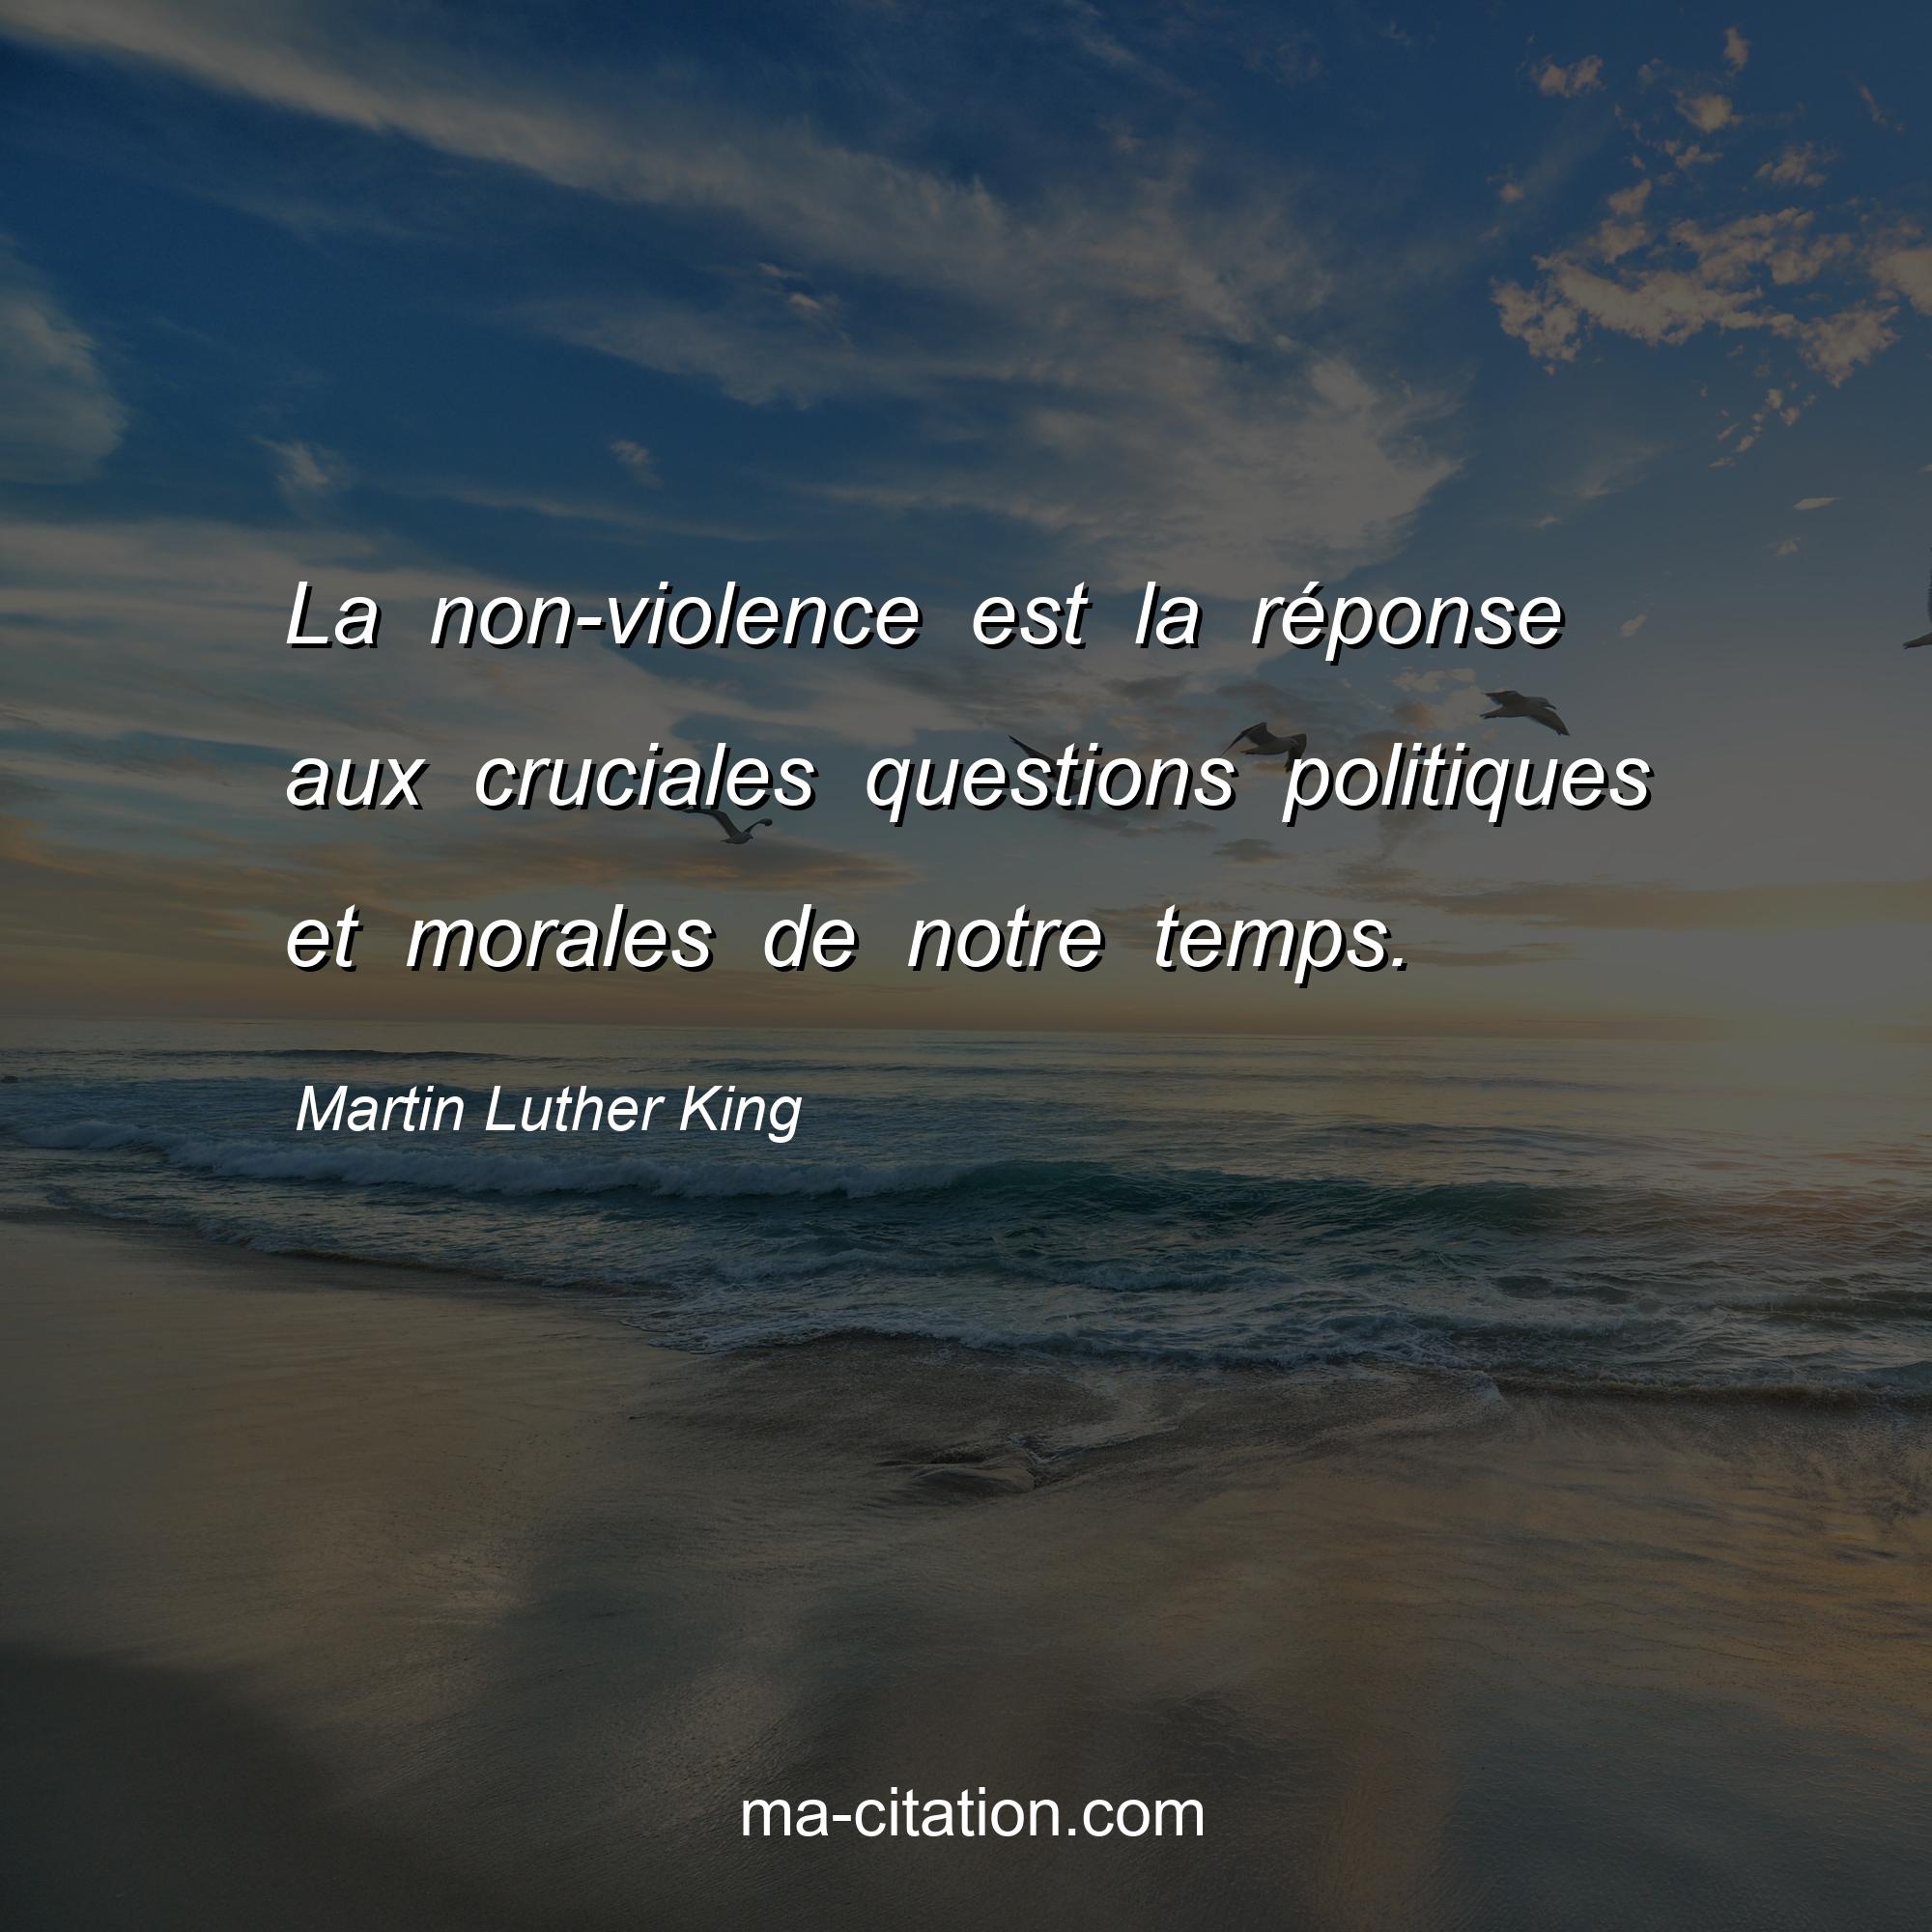 Martin Luther King : La non-violence est la réponse aux cruciales questions politiques et morales de notre temps.